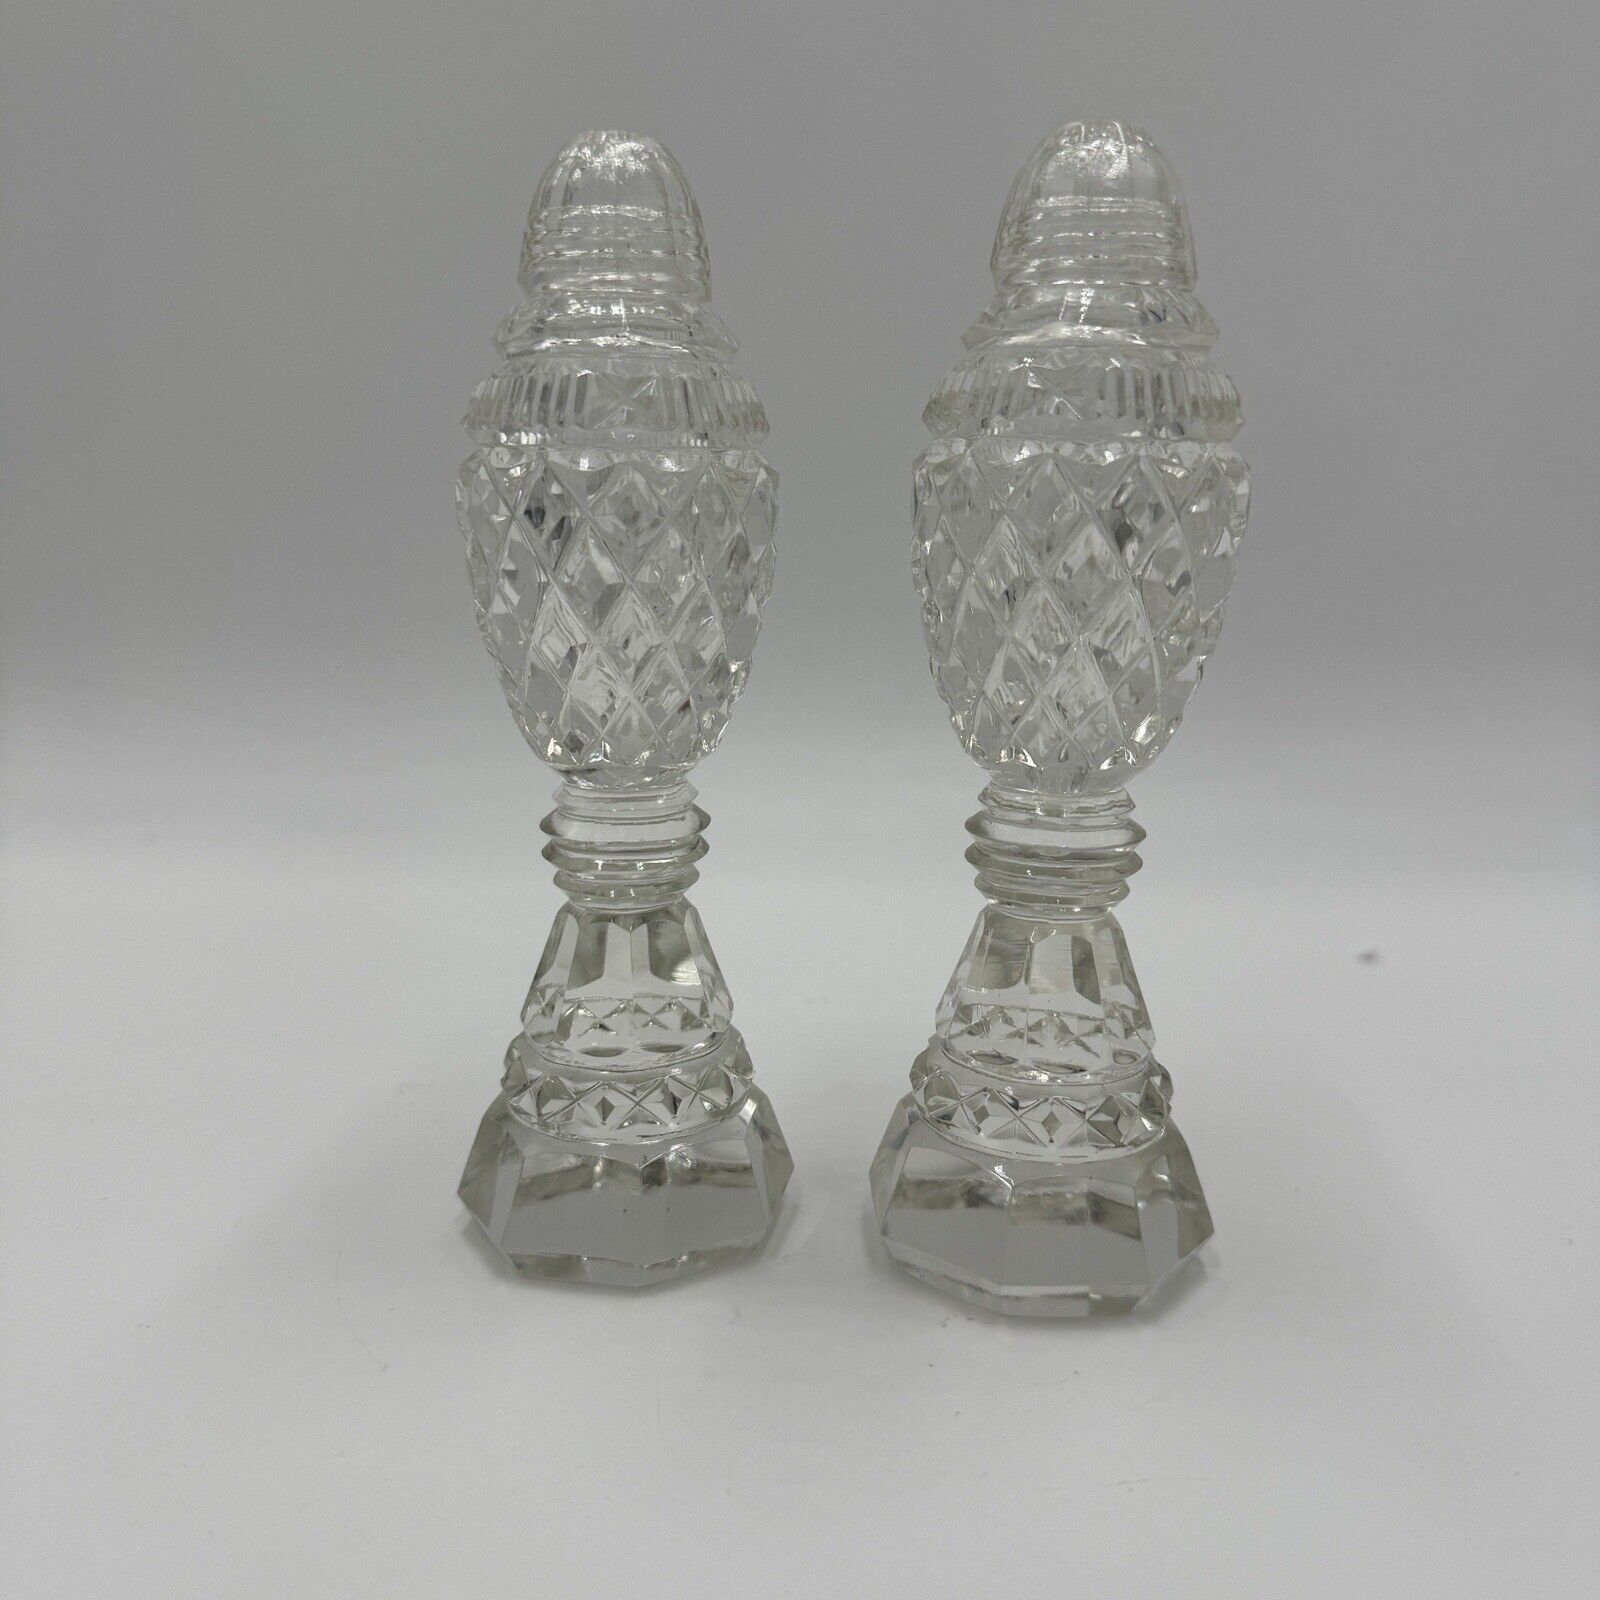 Antique Bohemian Czech Cut Glass Pedestal Salt & Pepper Shakers 6in H